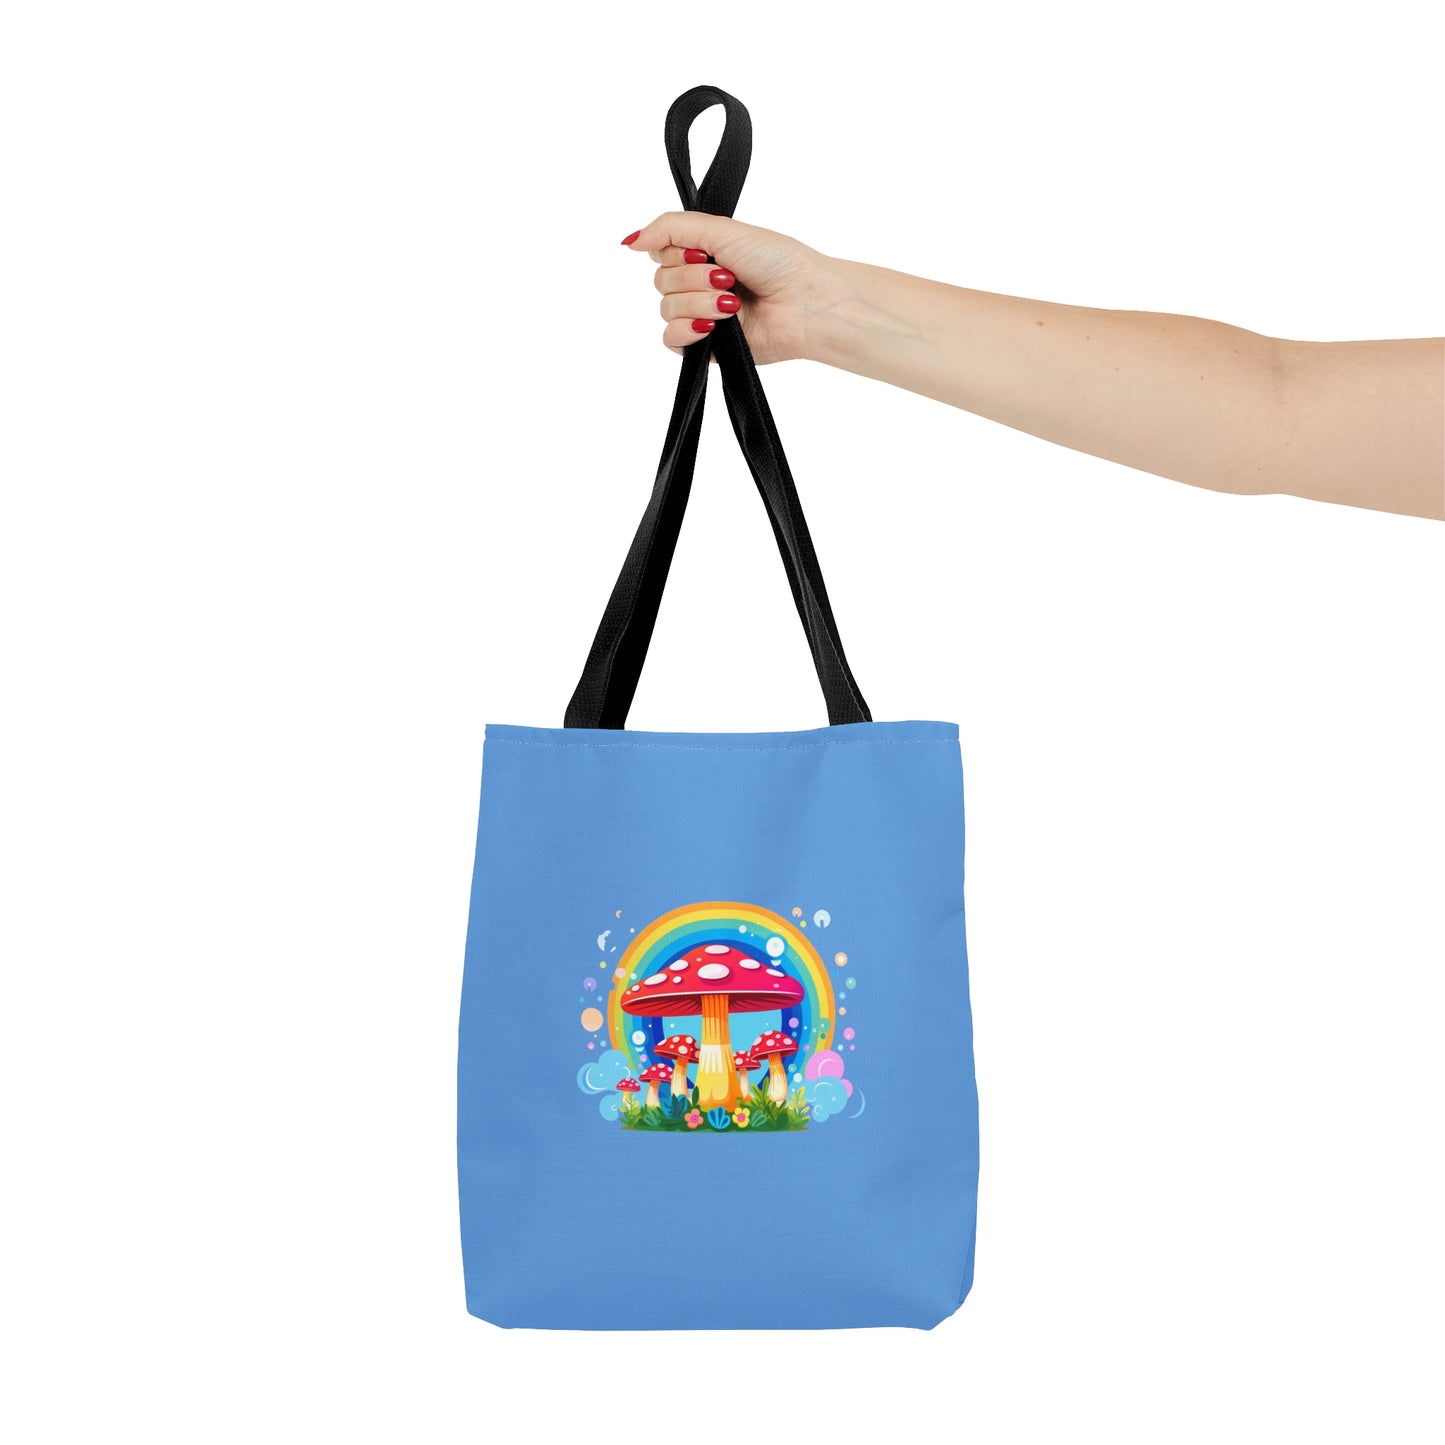 Colorful Rainbow Mushroom Tote Bag